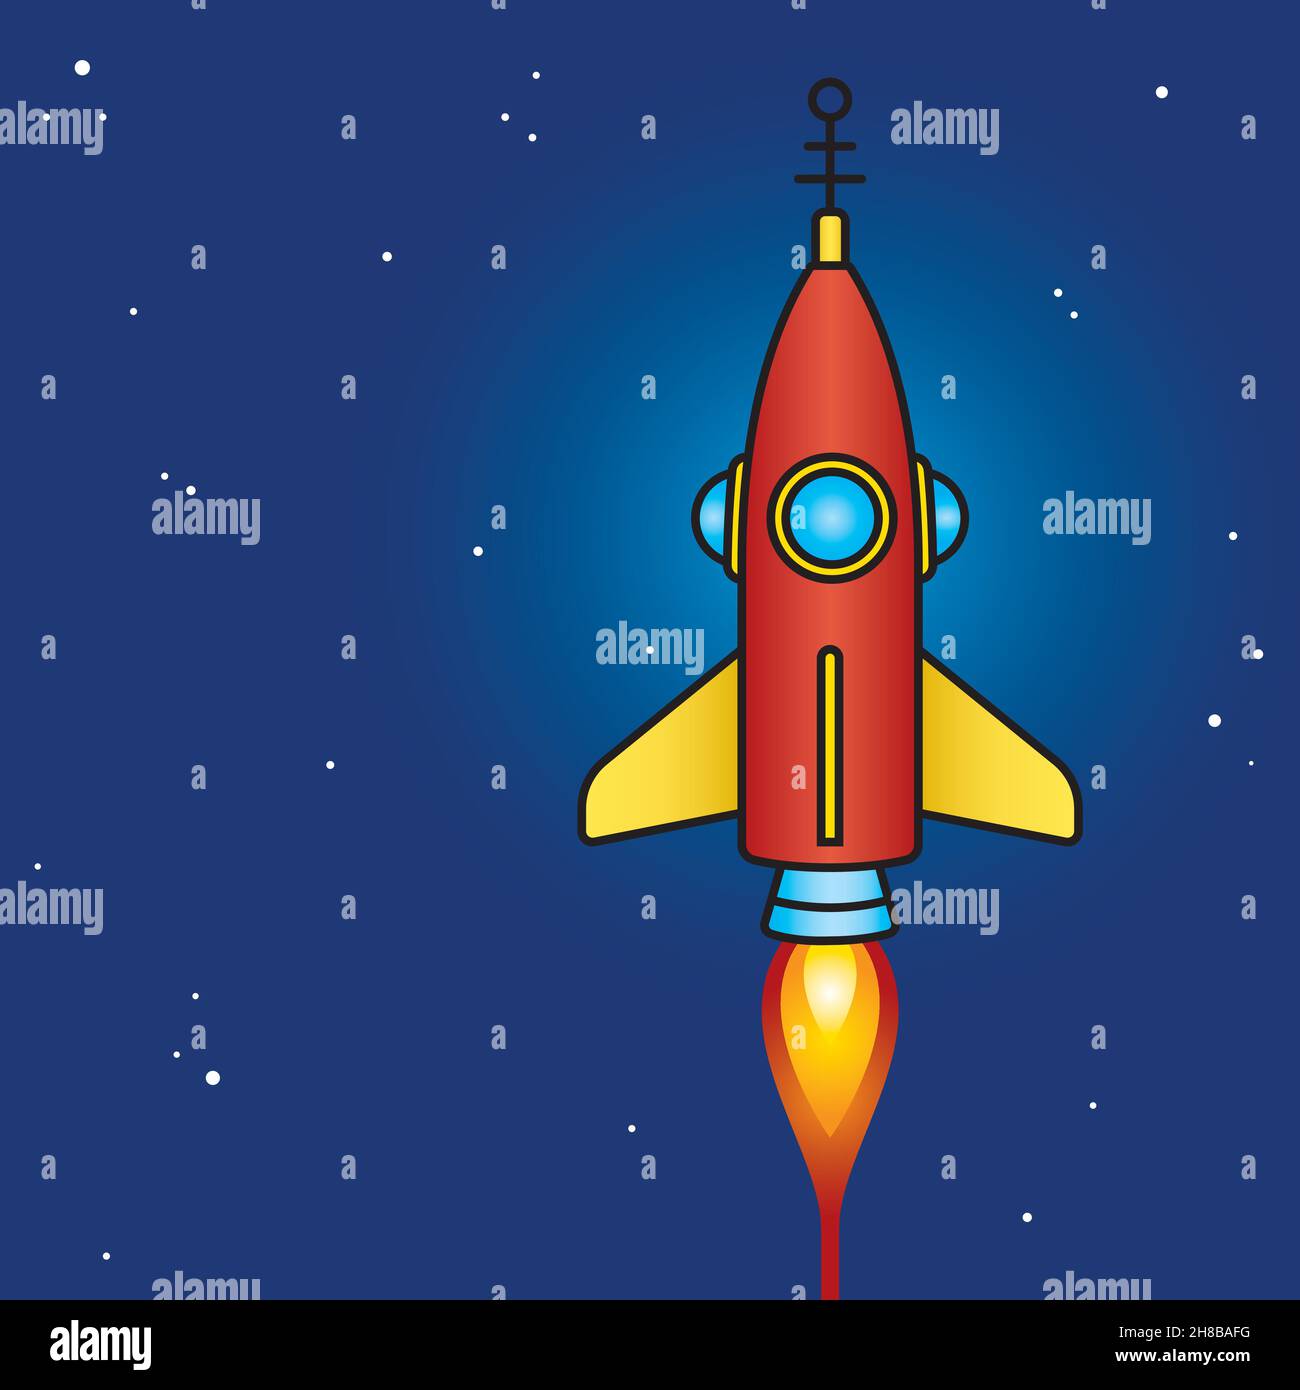 Retro-Science-Fiction-Raketendesign im Weltraum. Coole Vektor-Illustrationen im Vintage-Stil des klassischen Weltraumraketenschiffs aus der Mitte des Jahrhunderts. Abschalten, Baby! Stock Vektor